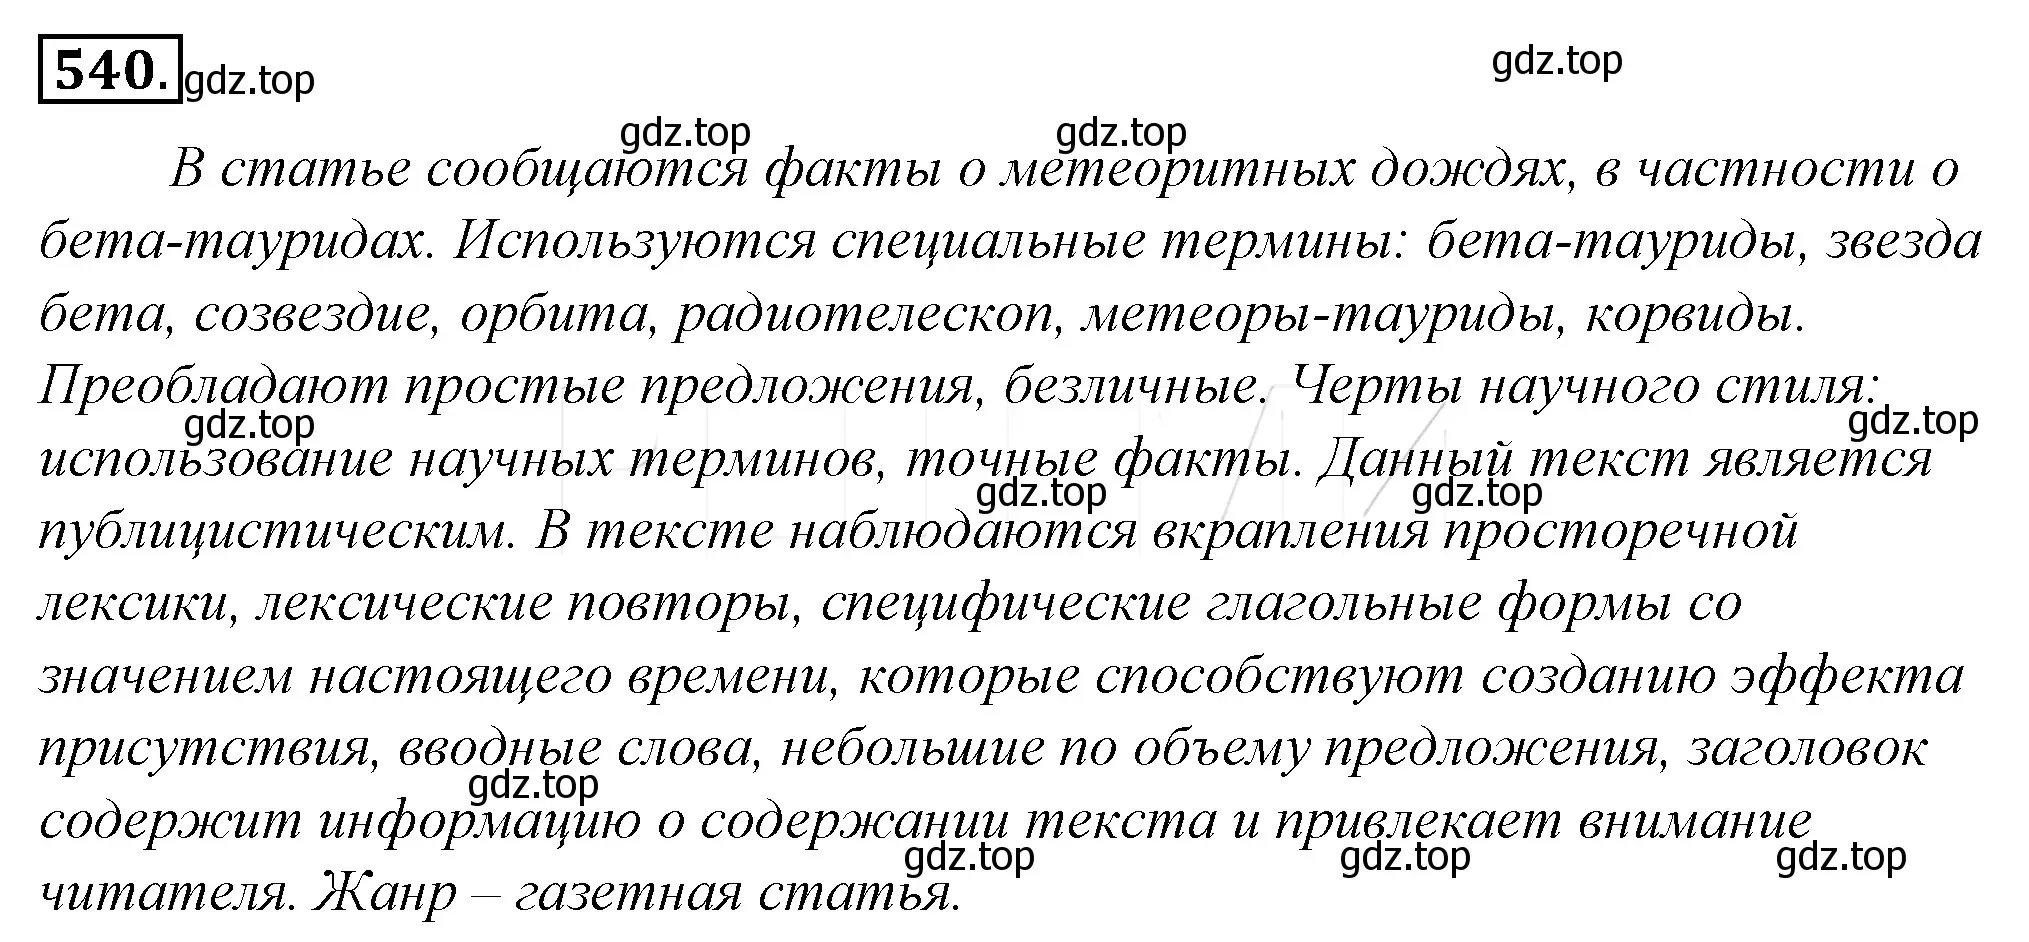 Решение 4. номер 216 (страница 296) гдз по русскому языку 10-11 класс Гольцова, Шамшин, учебник 2 часть